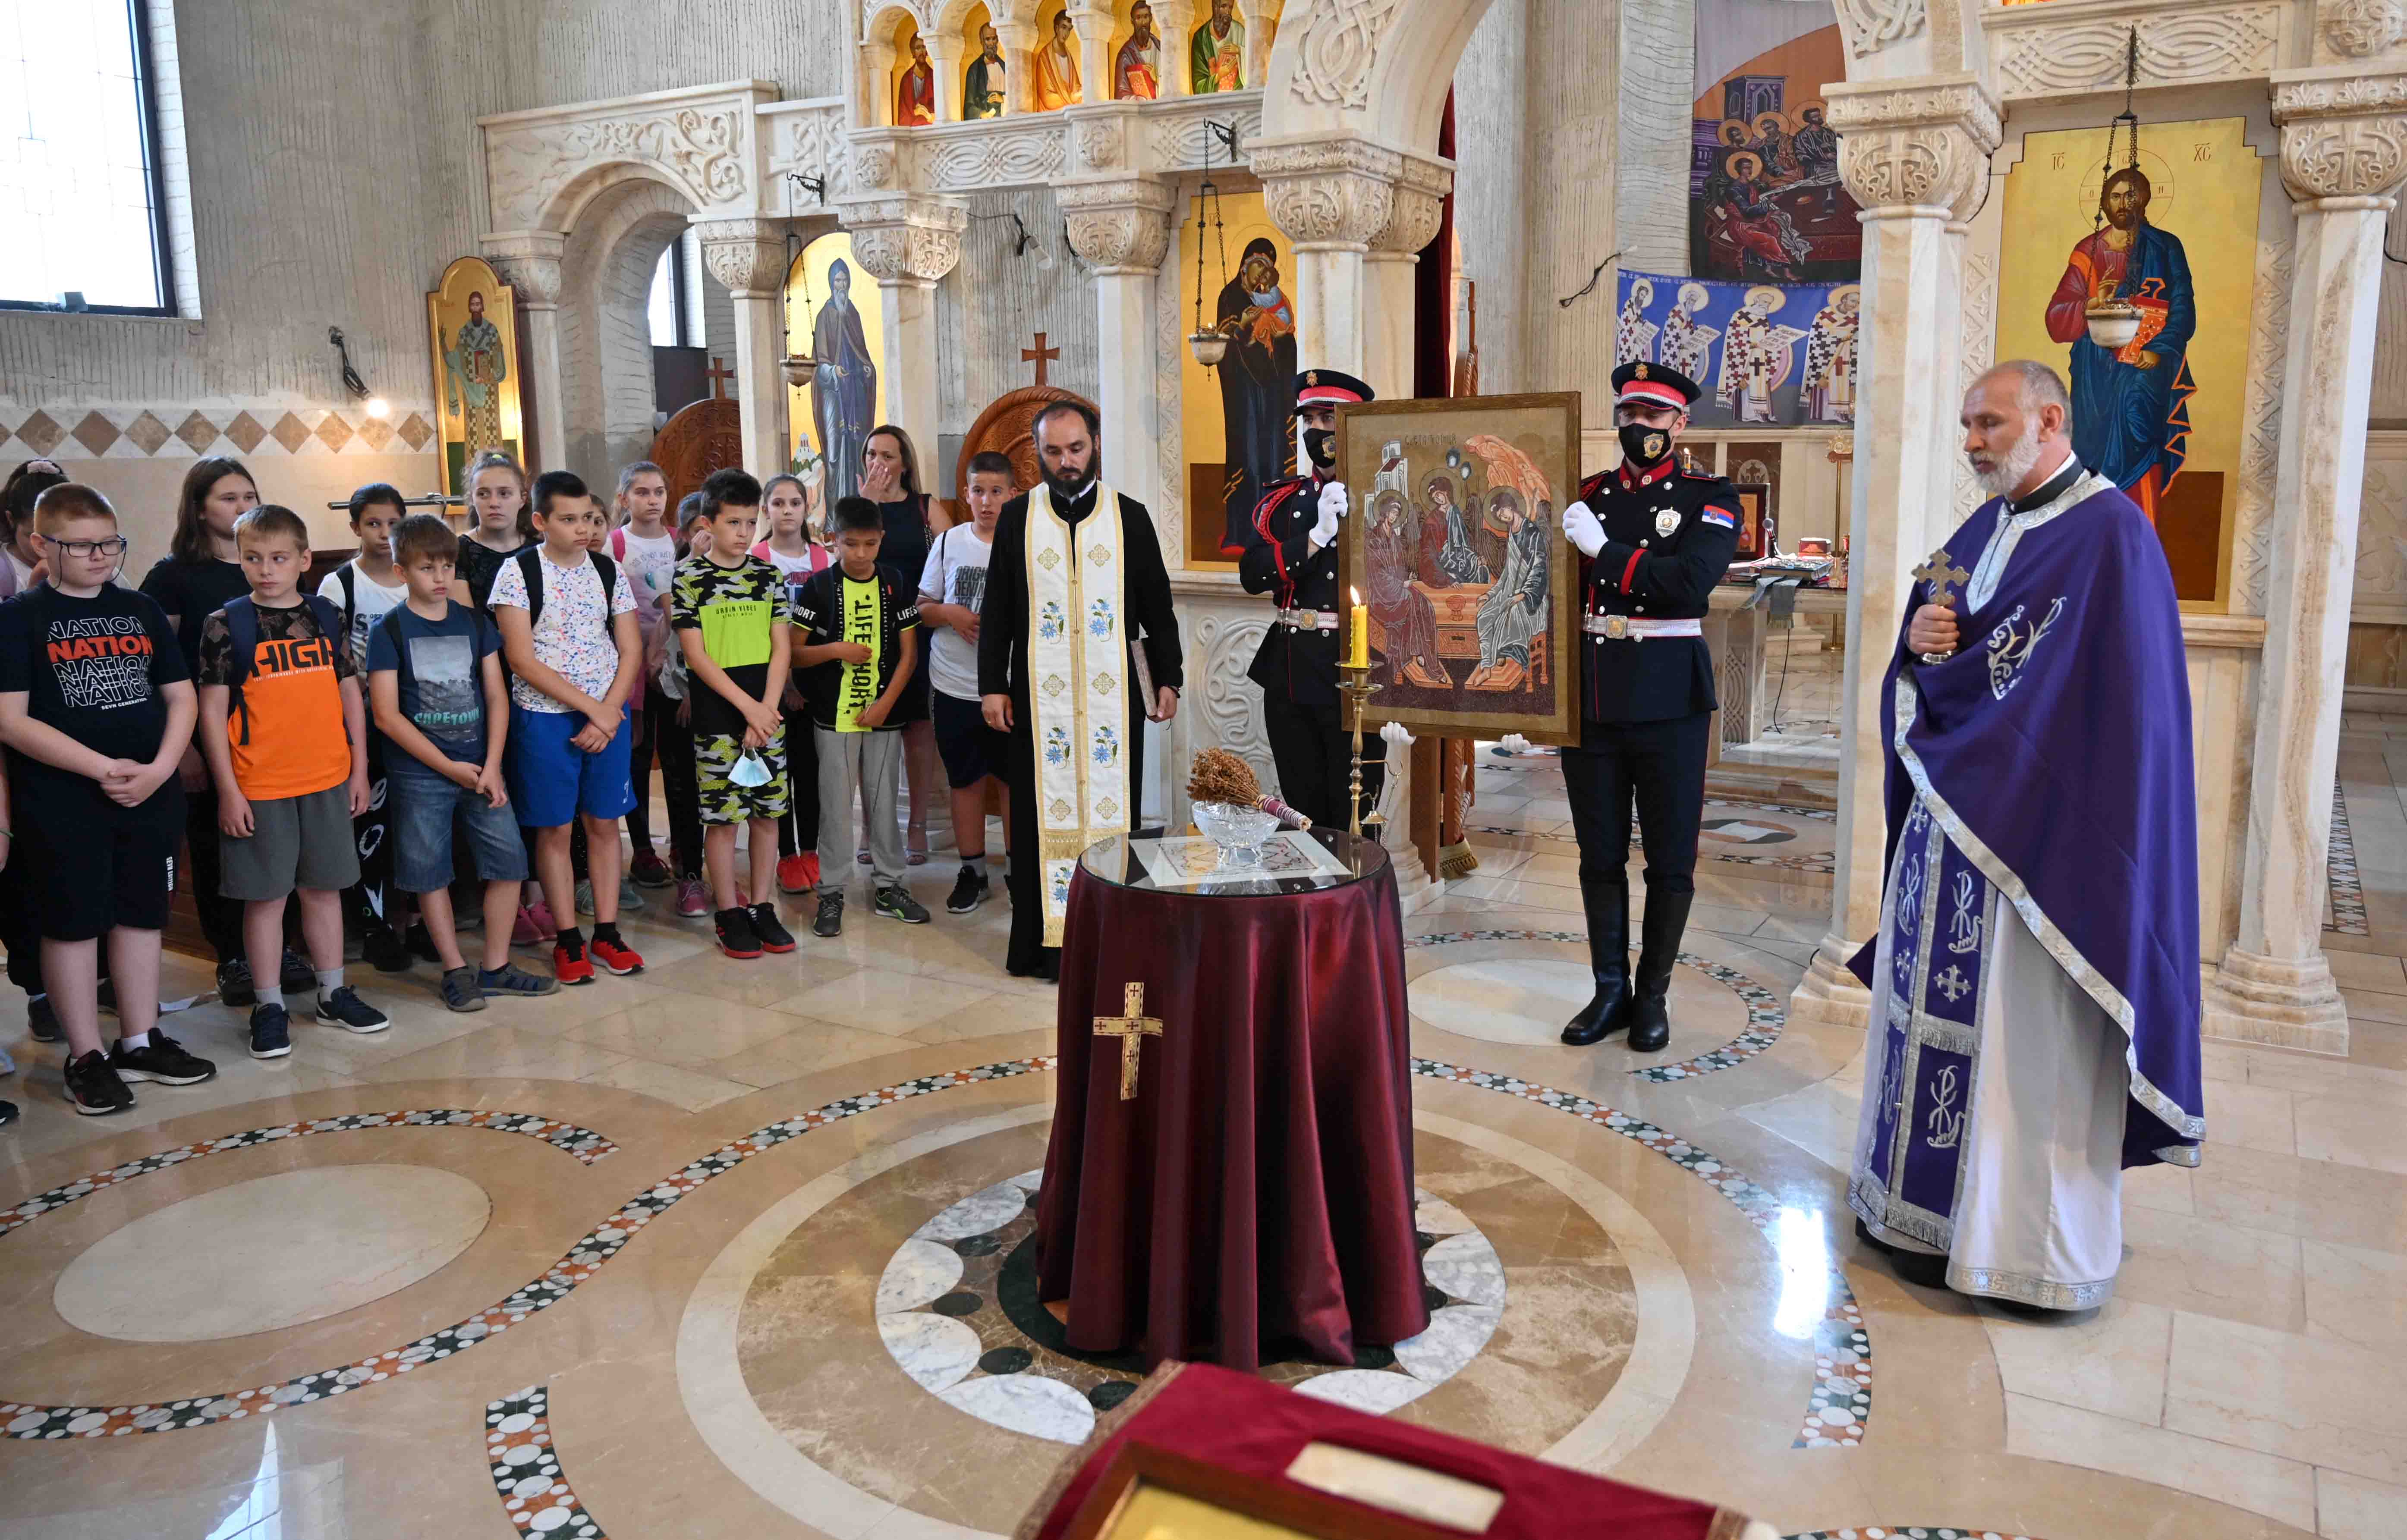  Ученици Основне школе из Руме поклонили министру Вулину икону Свете Тројице коју су сами израдили   